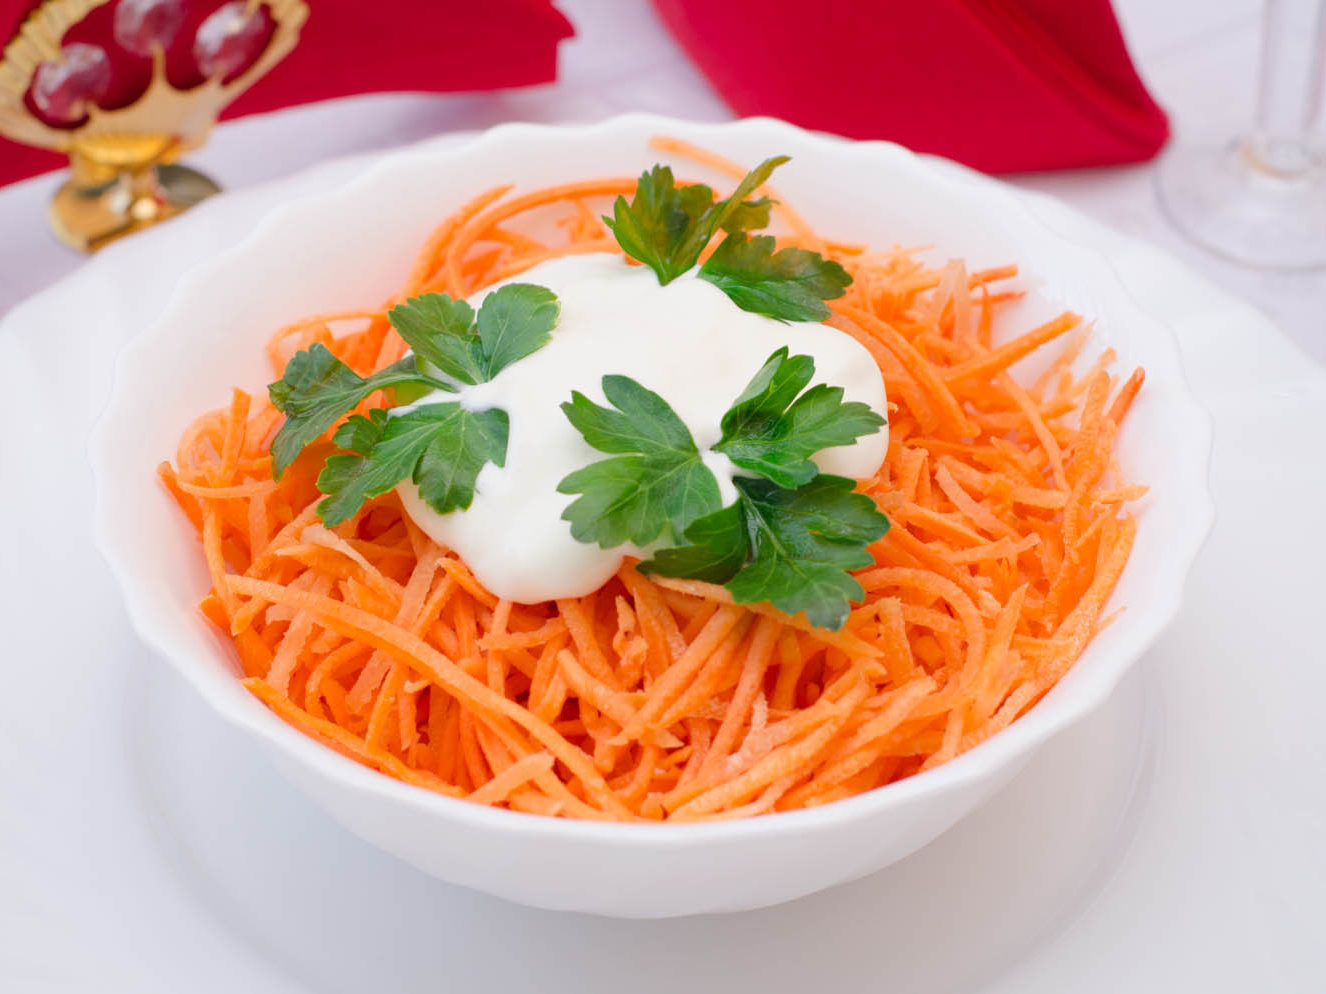 Детское меню в школе содержит один из самых простых салатов, это салат из моркови со сметаной.